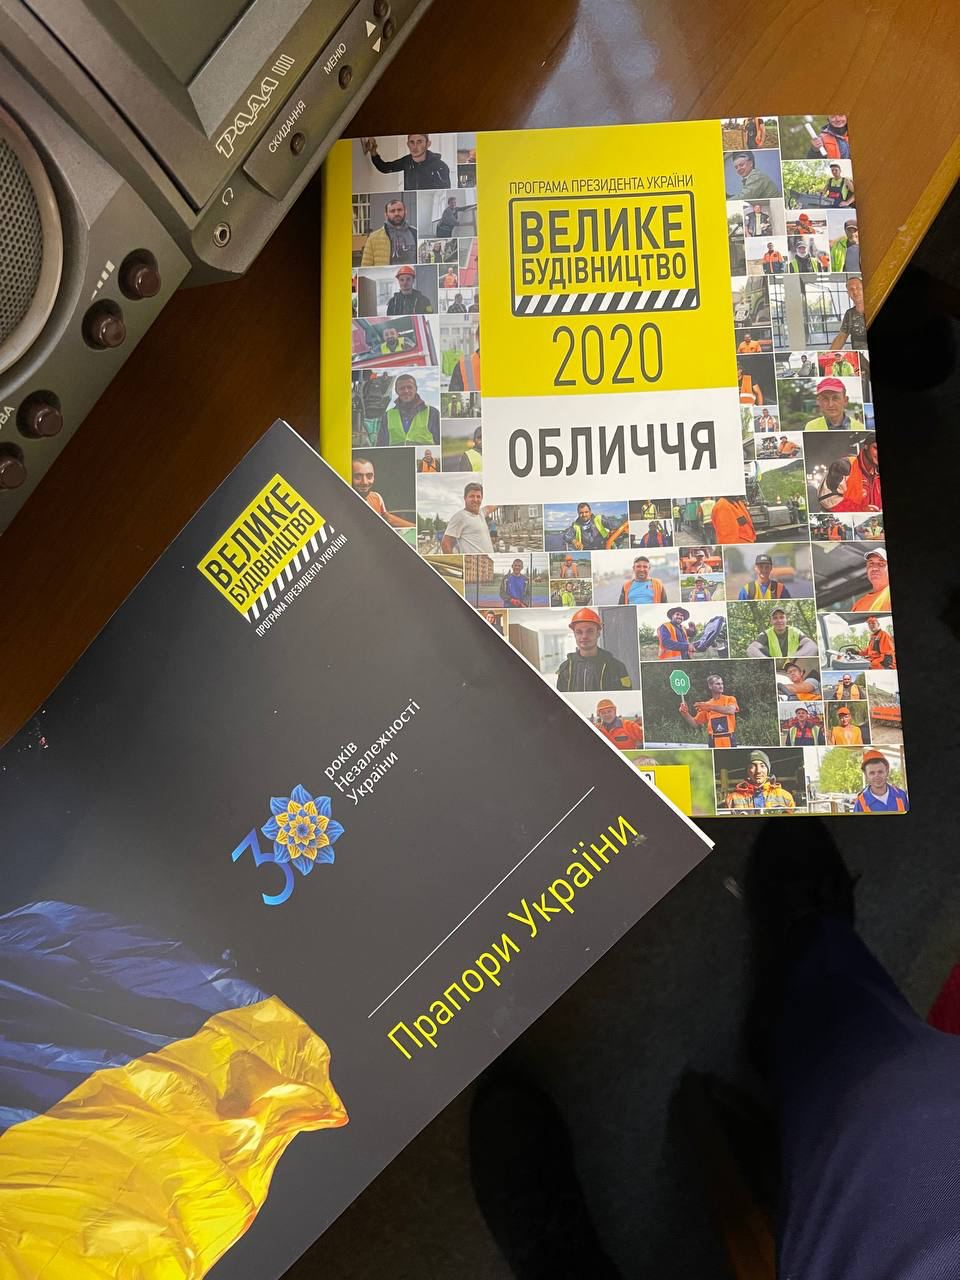 Книга "Велике будівництво" на пульте голосования в Верховной Раде Фото: t.me/oleksiihoncharenko